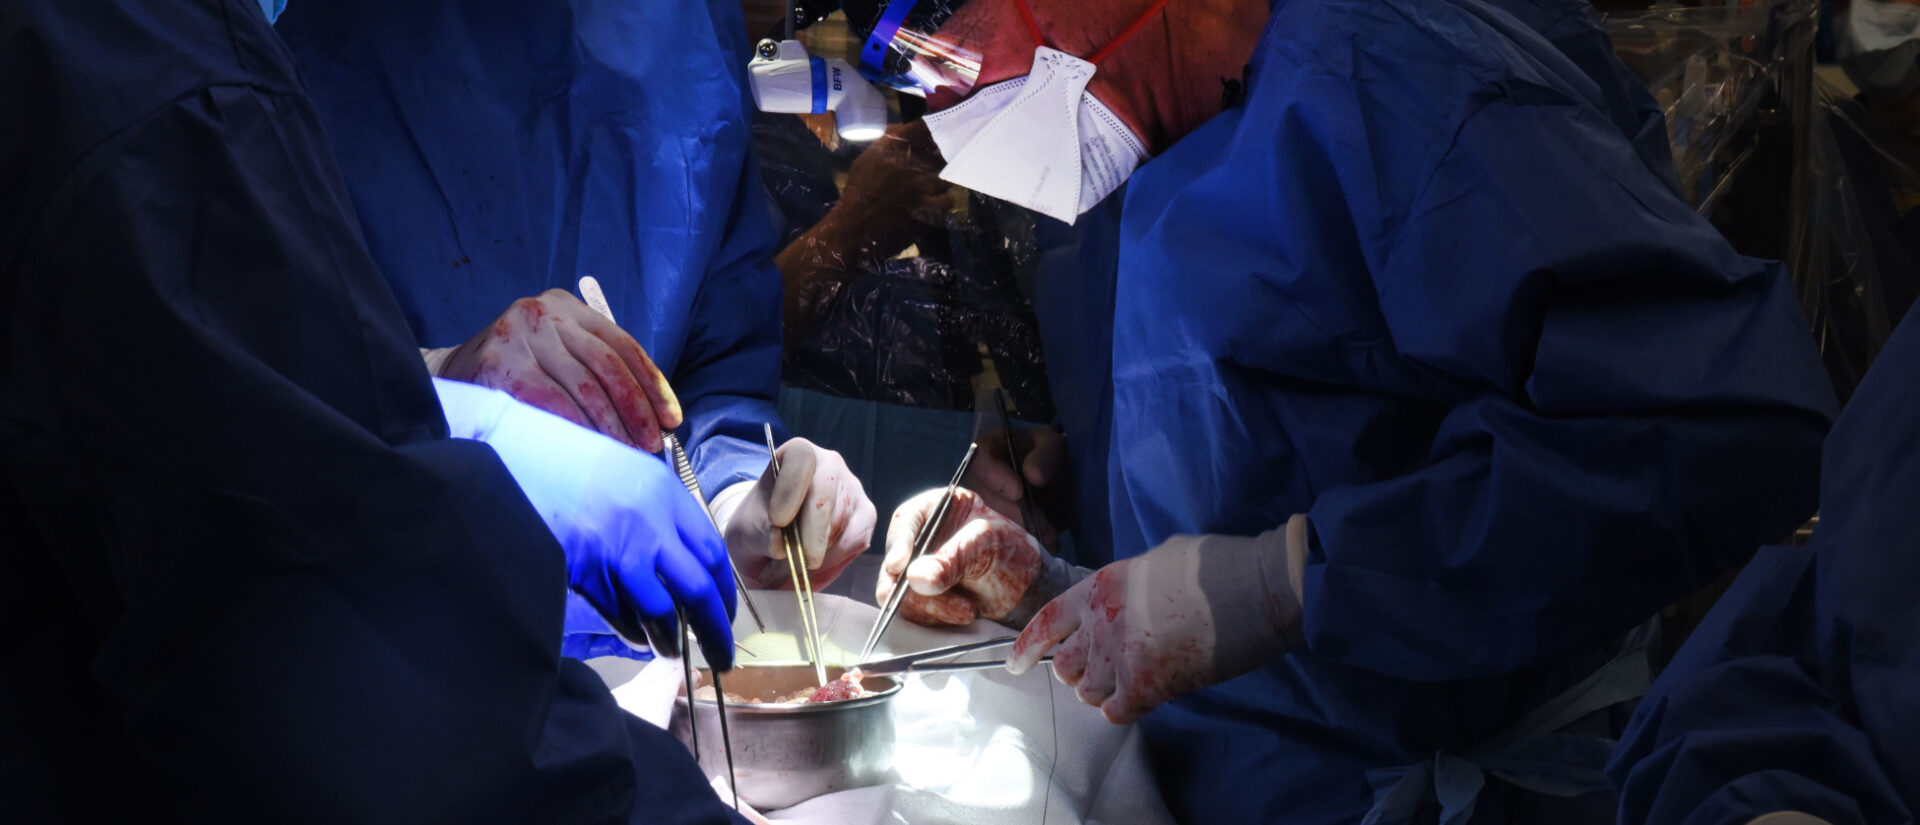 Schweineherz-Transplantation an der University of Maryland